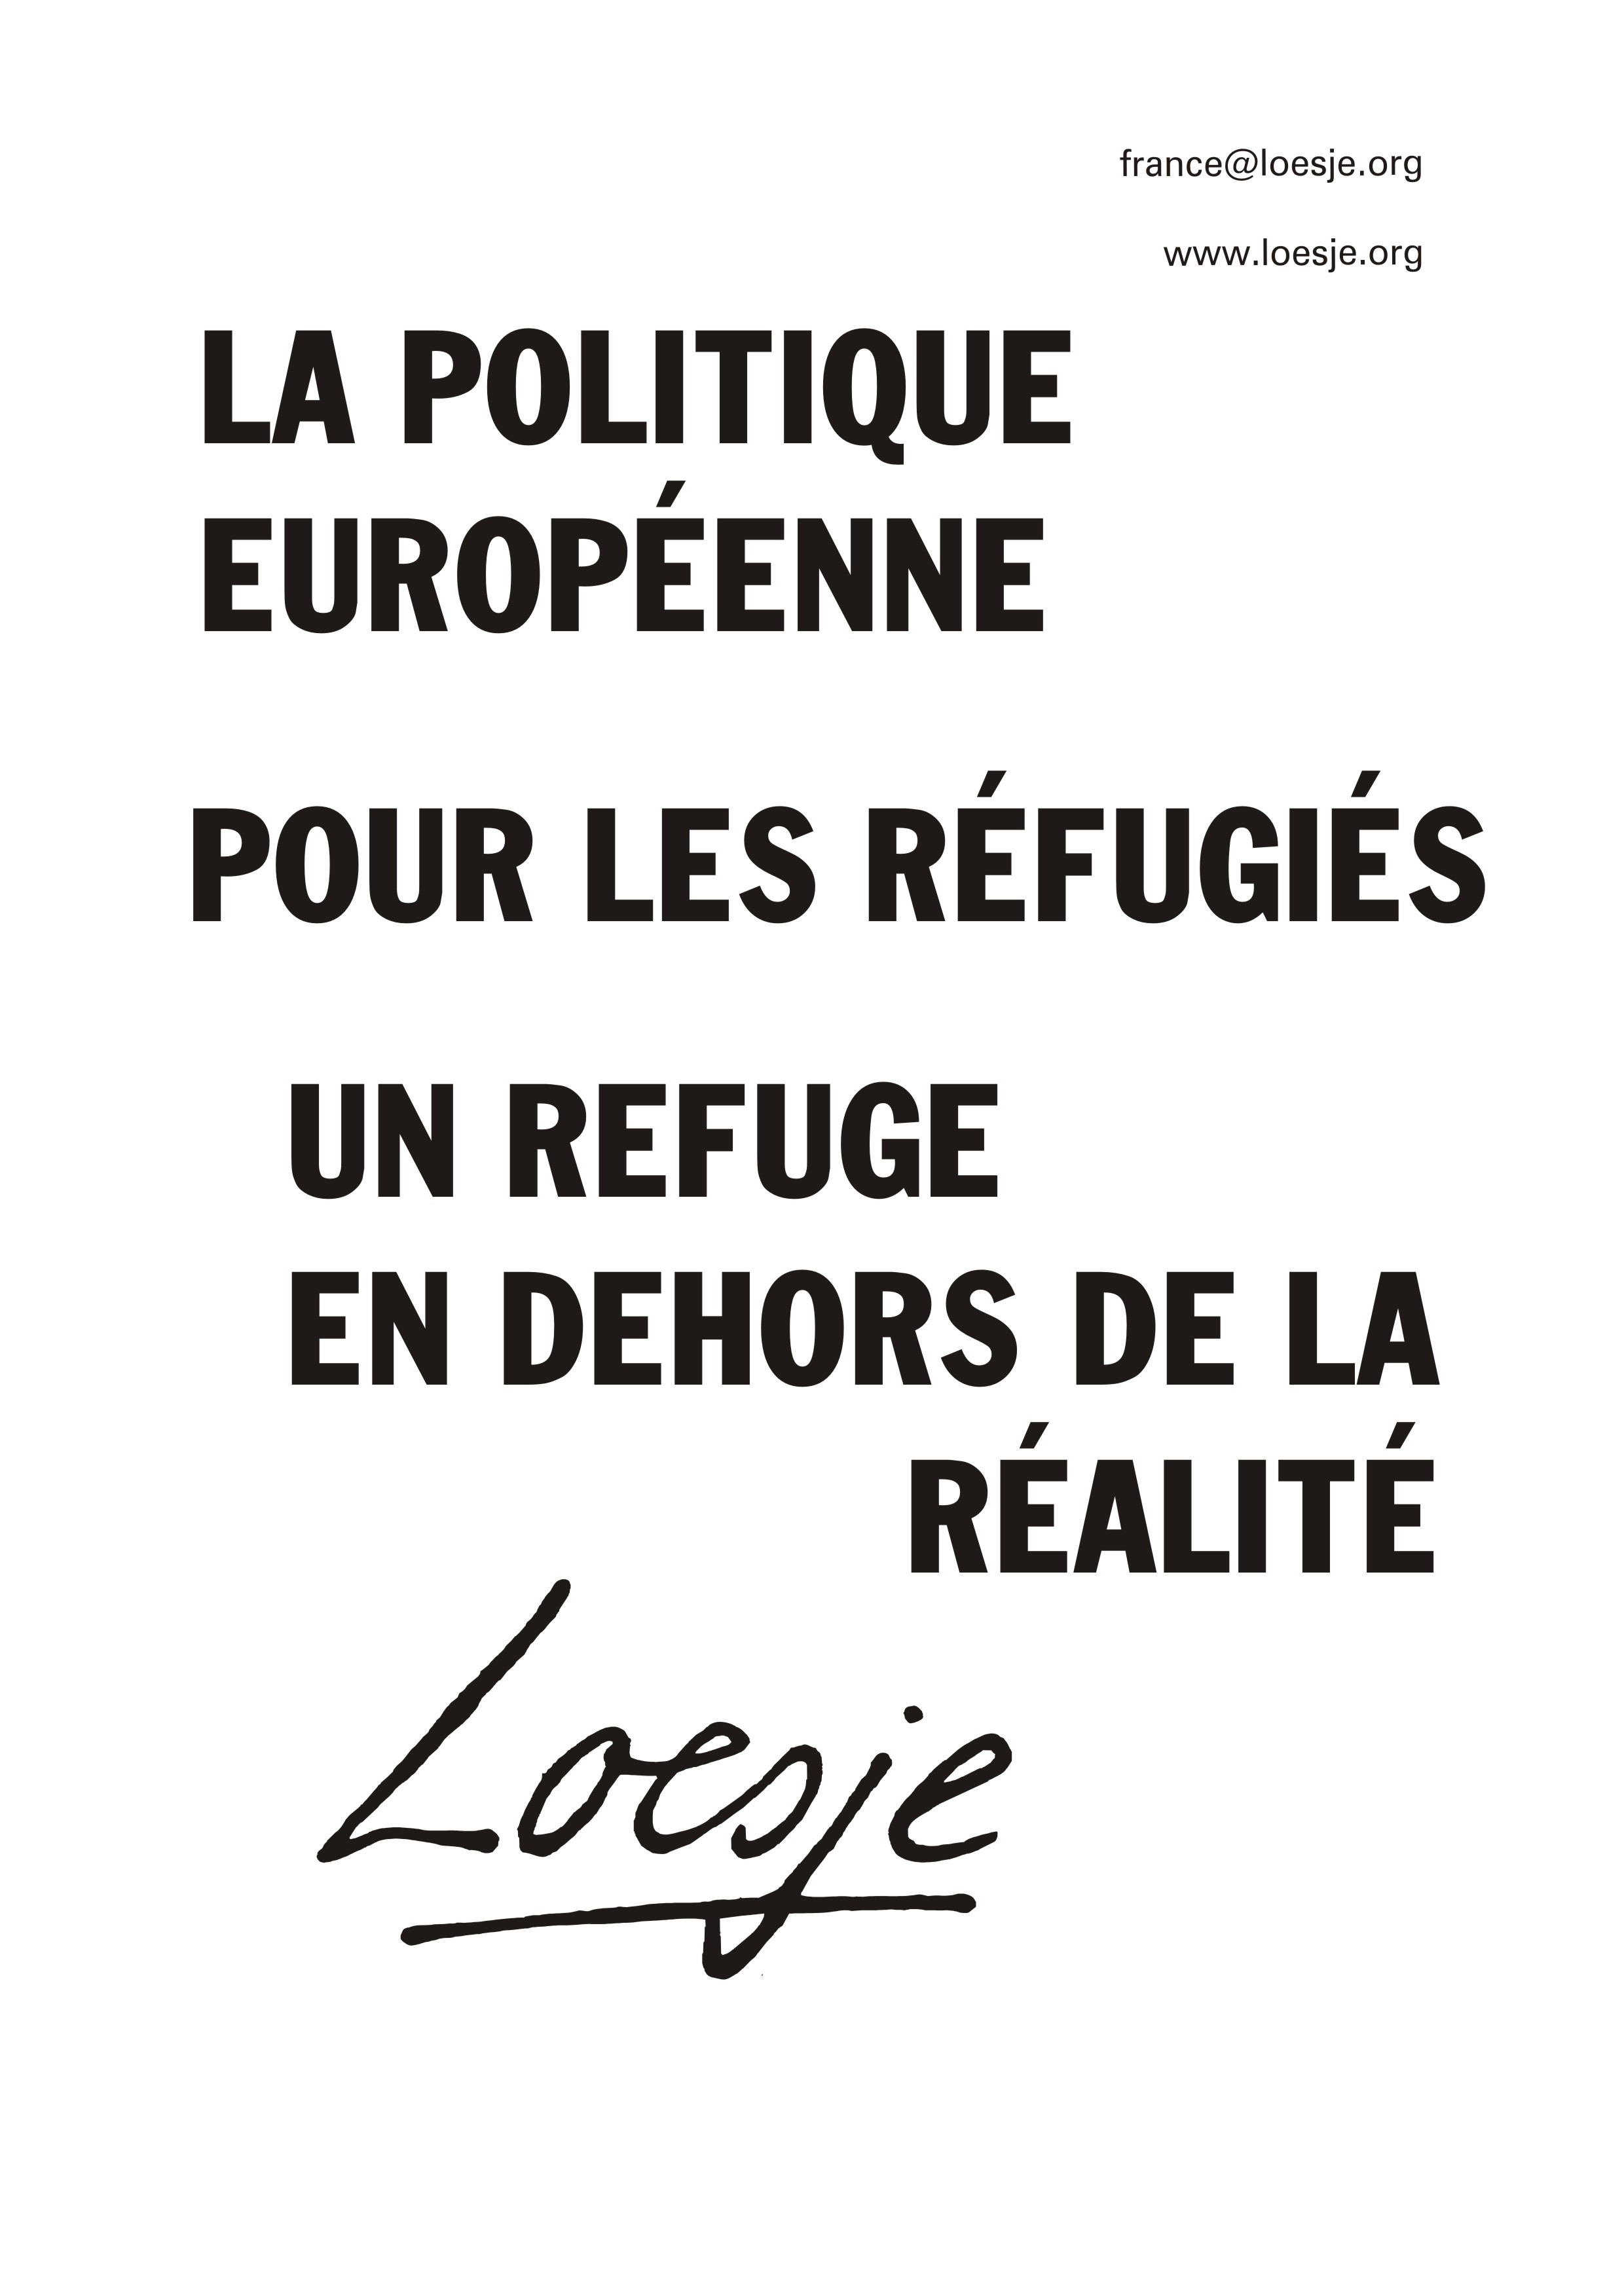 10 La politique européenne pour les réfugiés un refuge en dehors de la réalité